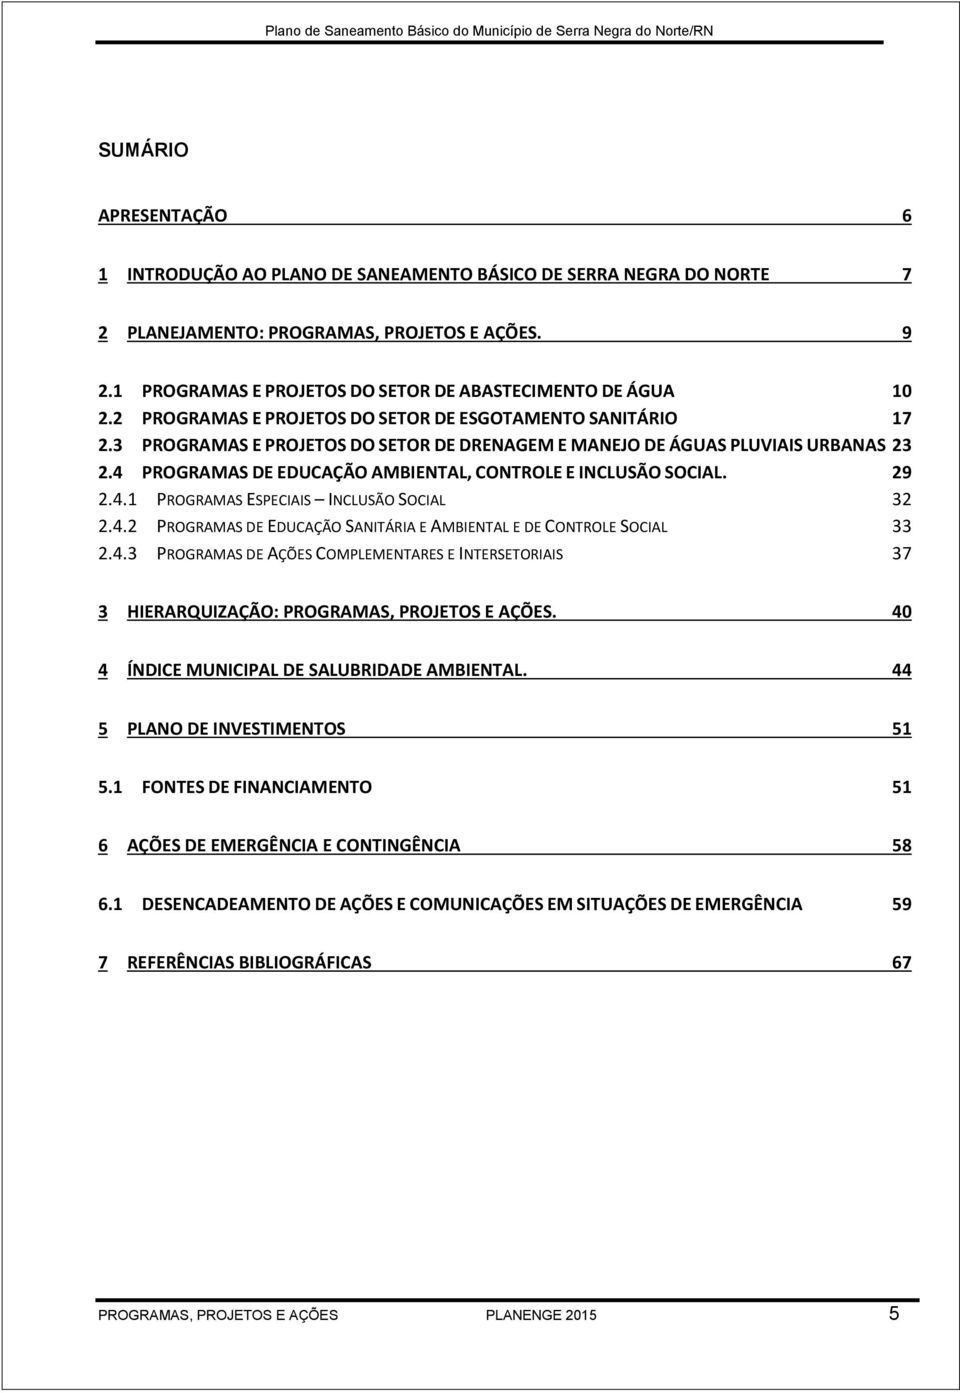 3 PROGRAMAS E PROJETOS DO SETOR DE DRENAGEM E MANEJO DE ÁGUAS PLUVIAIS URBANAS 23 2.4 PROGRAMAS DE EDUCAÇÃO AMBIENTAL, CONTROLE E INCLUSÃO SOCIAL. 29 2.4.1 PROGRAMAS ESPECIAIS INCLUSÃO SOCIAL 32 2.4.2 PROGRAMAS DE EDUCAÇÃO SANITÁRIA E AMBIENTAL E DE CONTROLE SOCIAL 33 2.